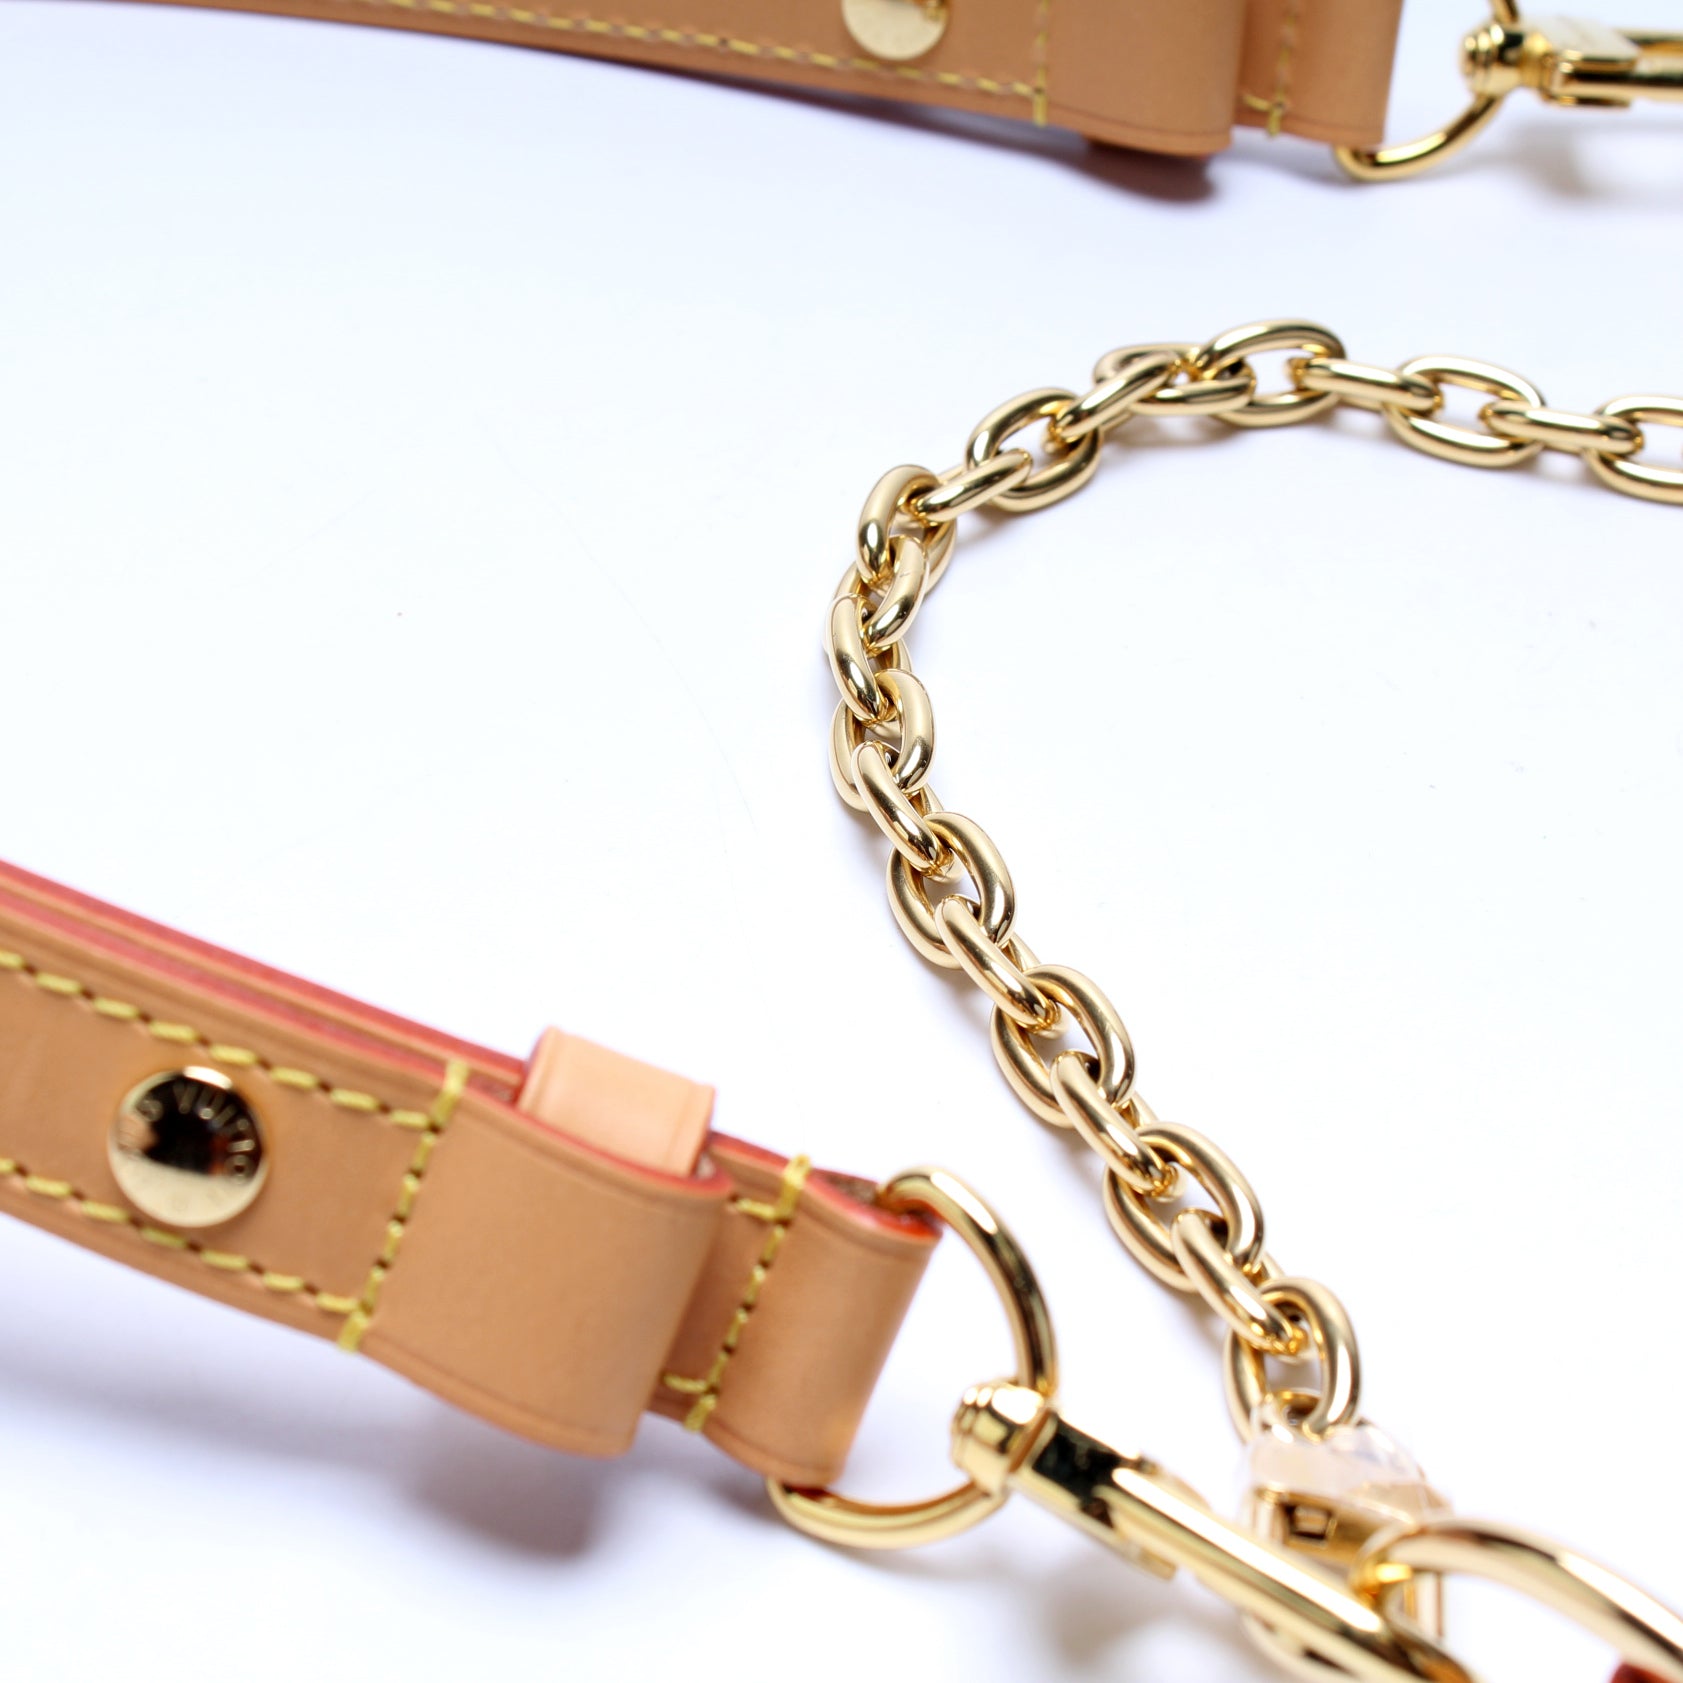 Loop Monogram – Keeks Designer Handbags